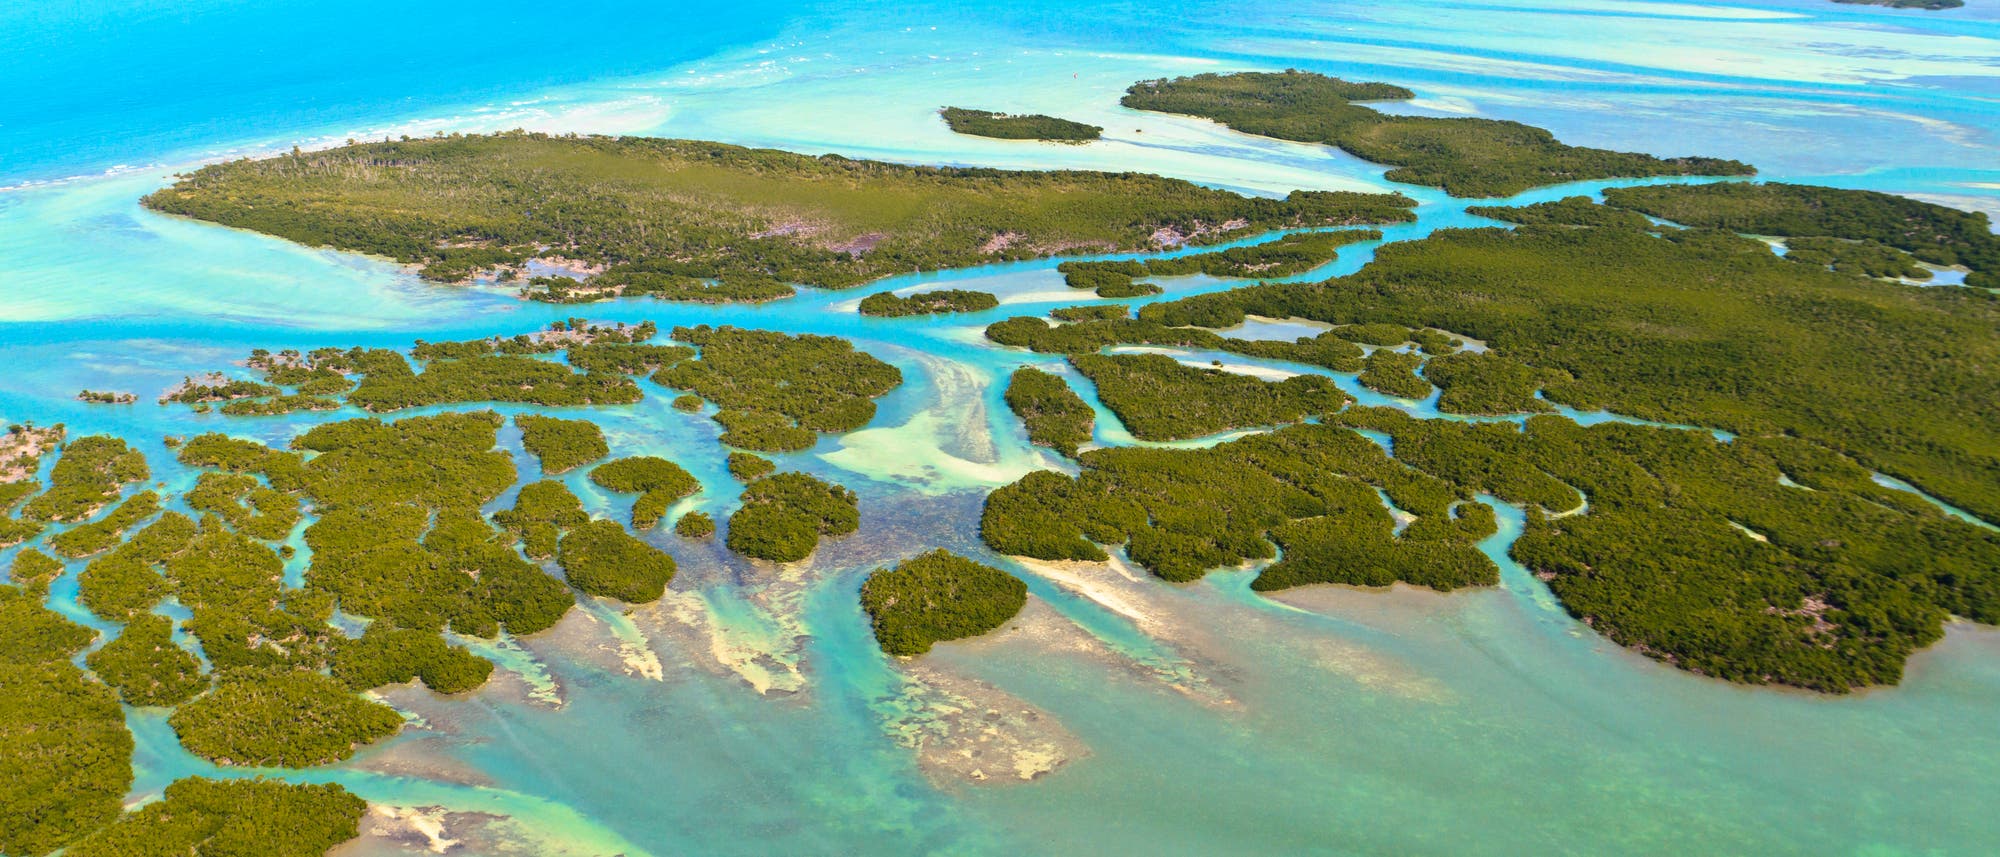 Rund um die Florida Keys finden sich noch Korallenriffe - aber nur wenige.